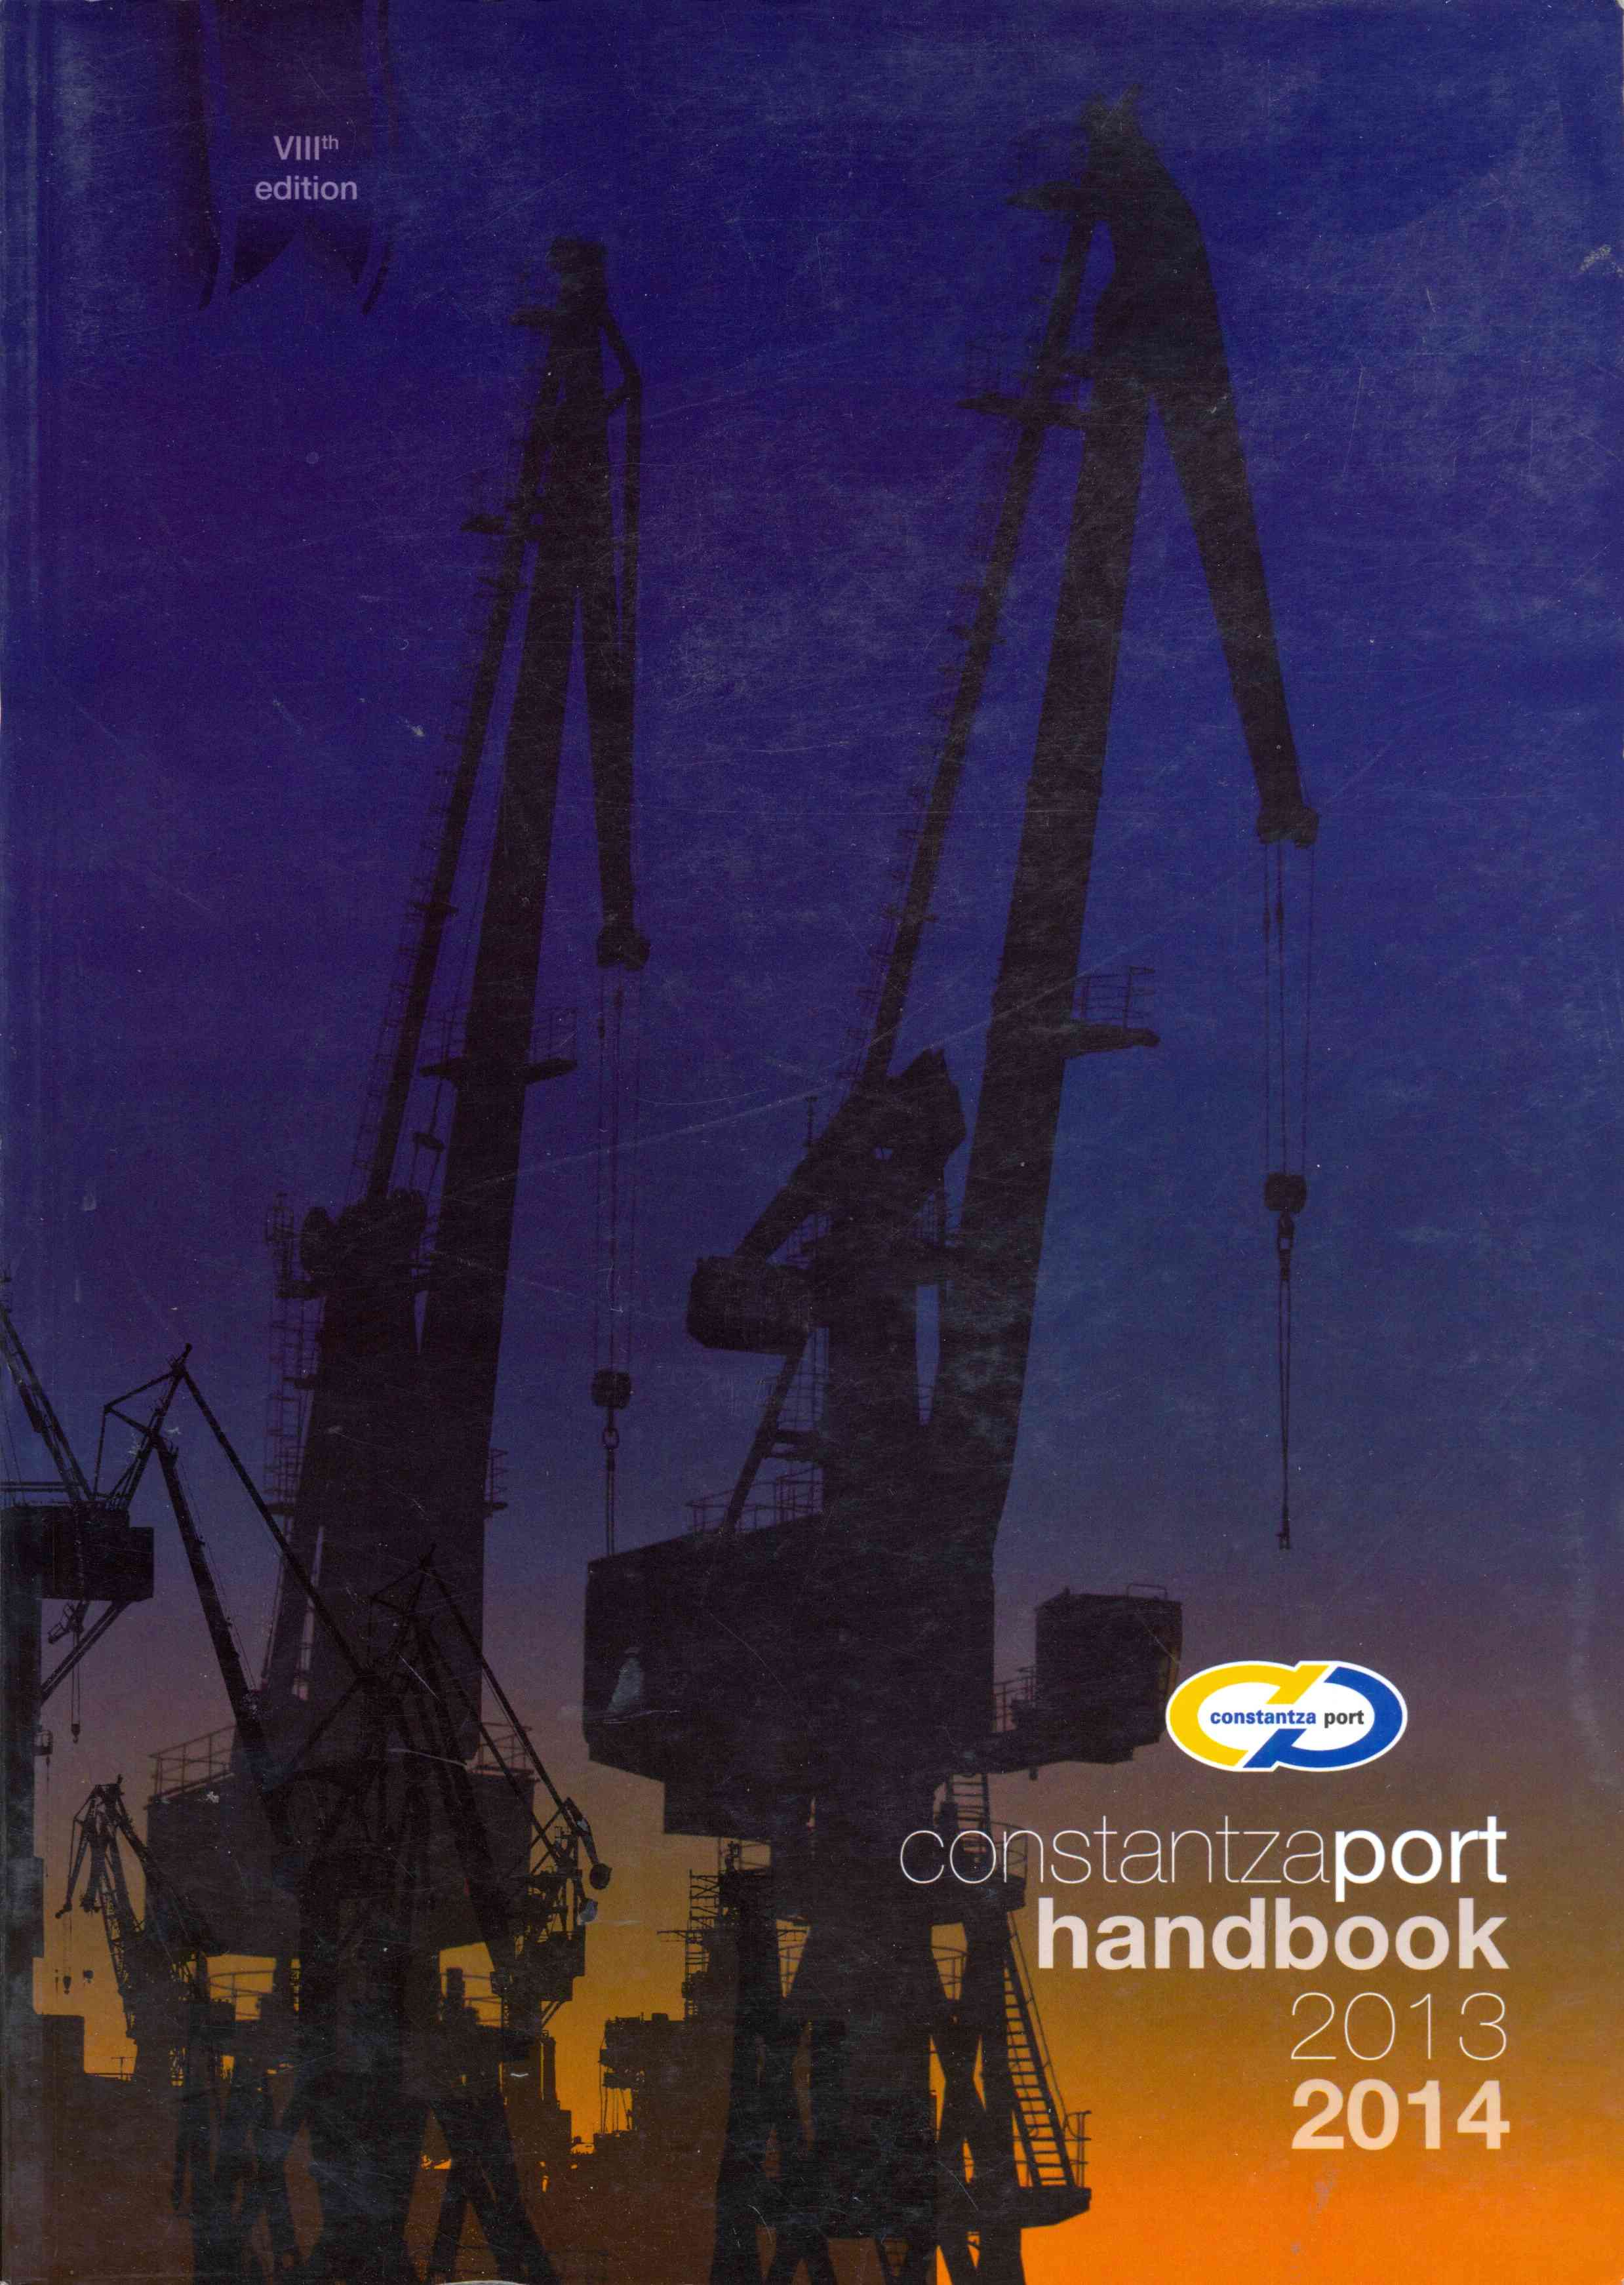 Constantza Port Handbook 2013-2014